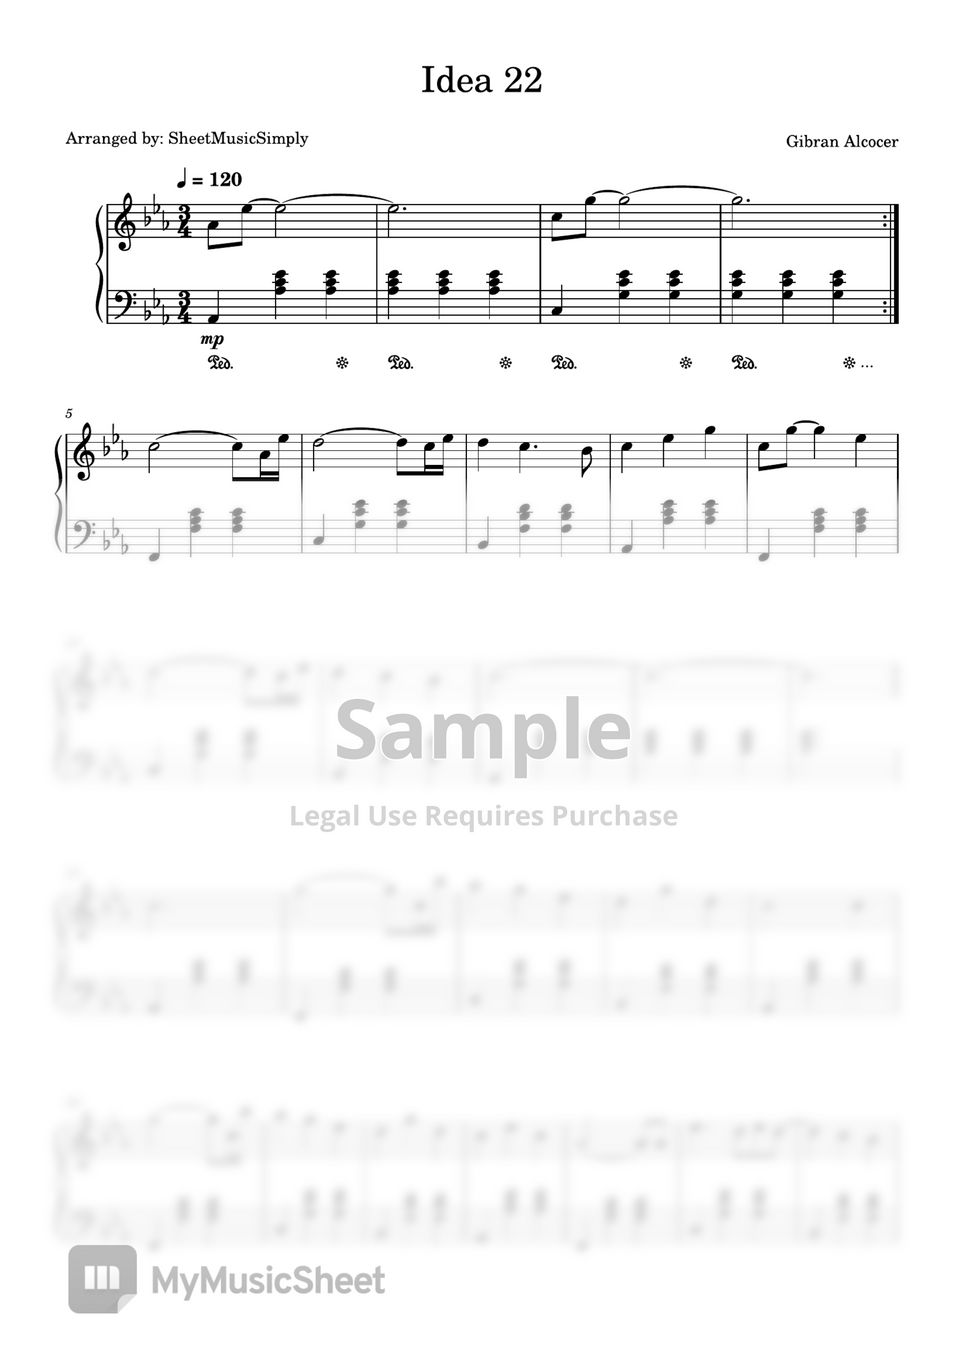 Gibran Alcocer - Idea 22 (Piano Solo) by SheetMusicSimply